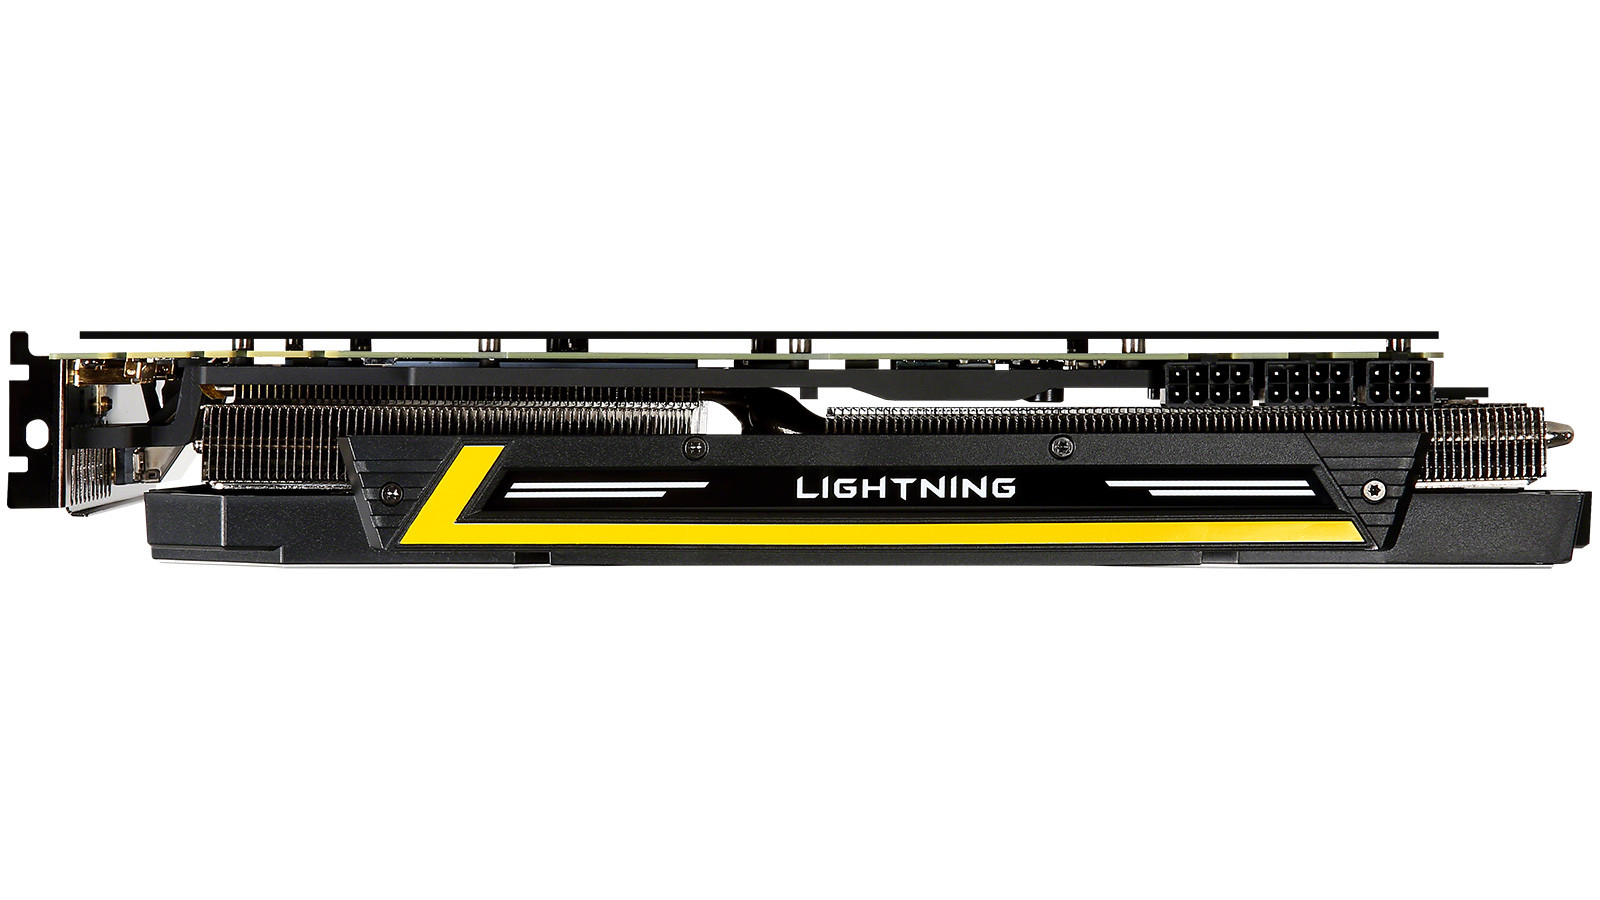 Immagine pubblicata in relazione al seguente contenuto: Overclocking: MSI annuncia la video card GeForce GTX 980Ti Lightning | Nome immagine: news23014_MSI-GeForce-GTX-980Ti-Lightning_6.jpg